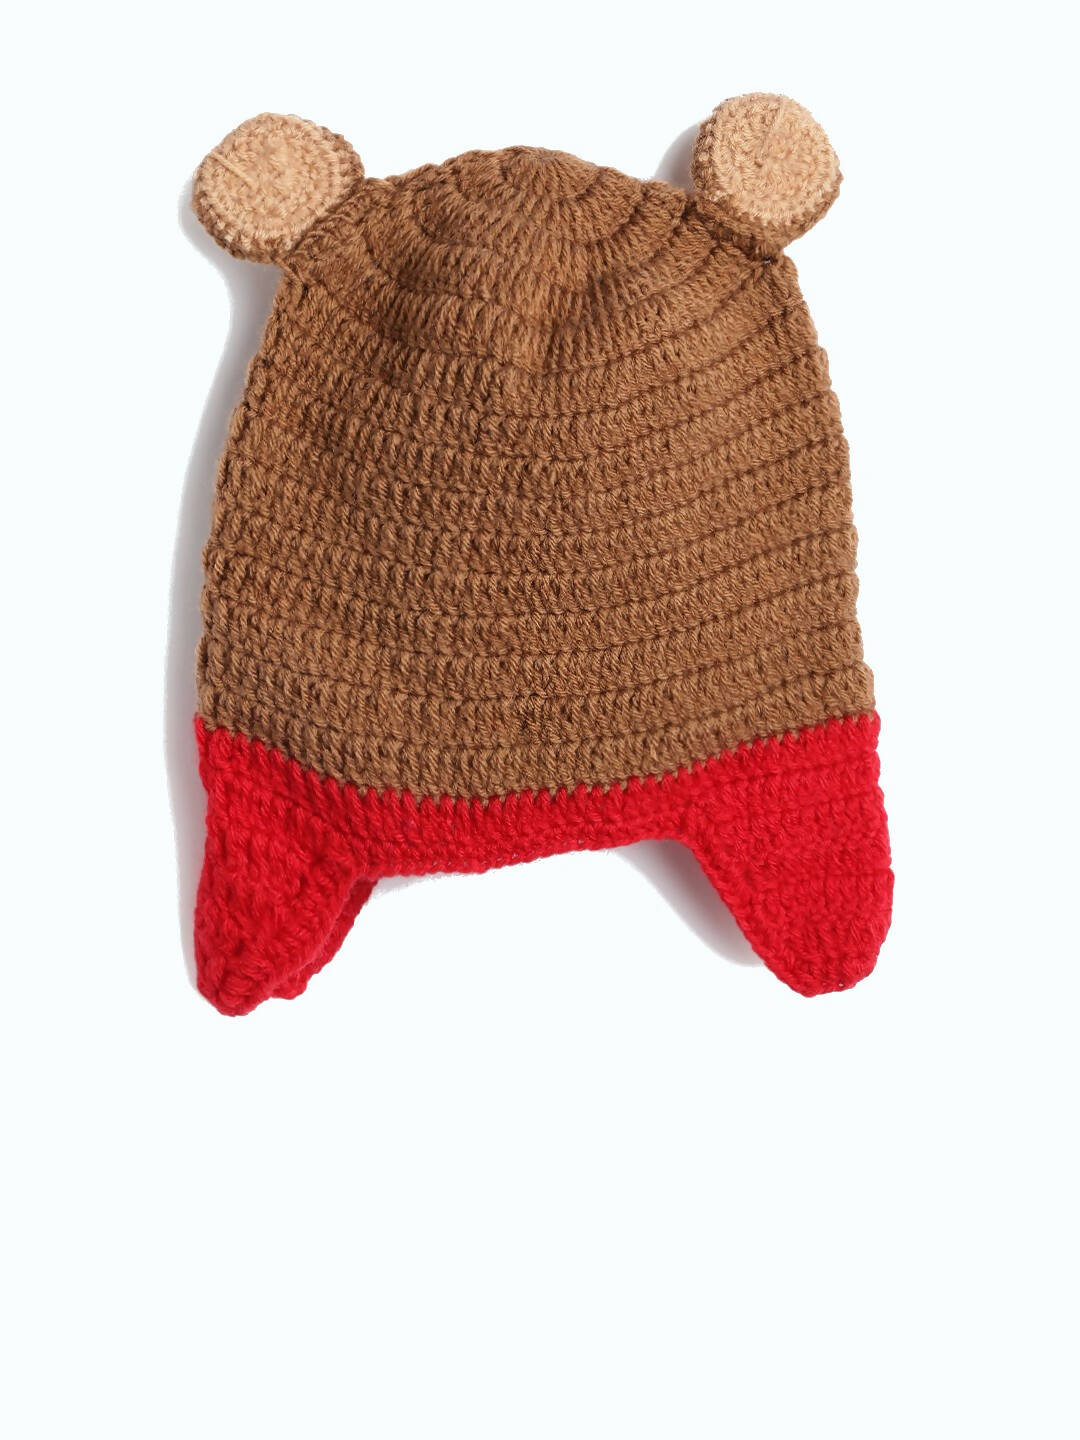 Chutput Kids Woollen Hand Knitted Bear Detail Cap - Brown - Distacart